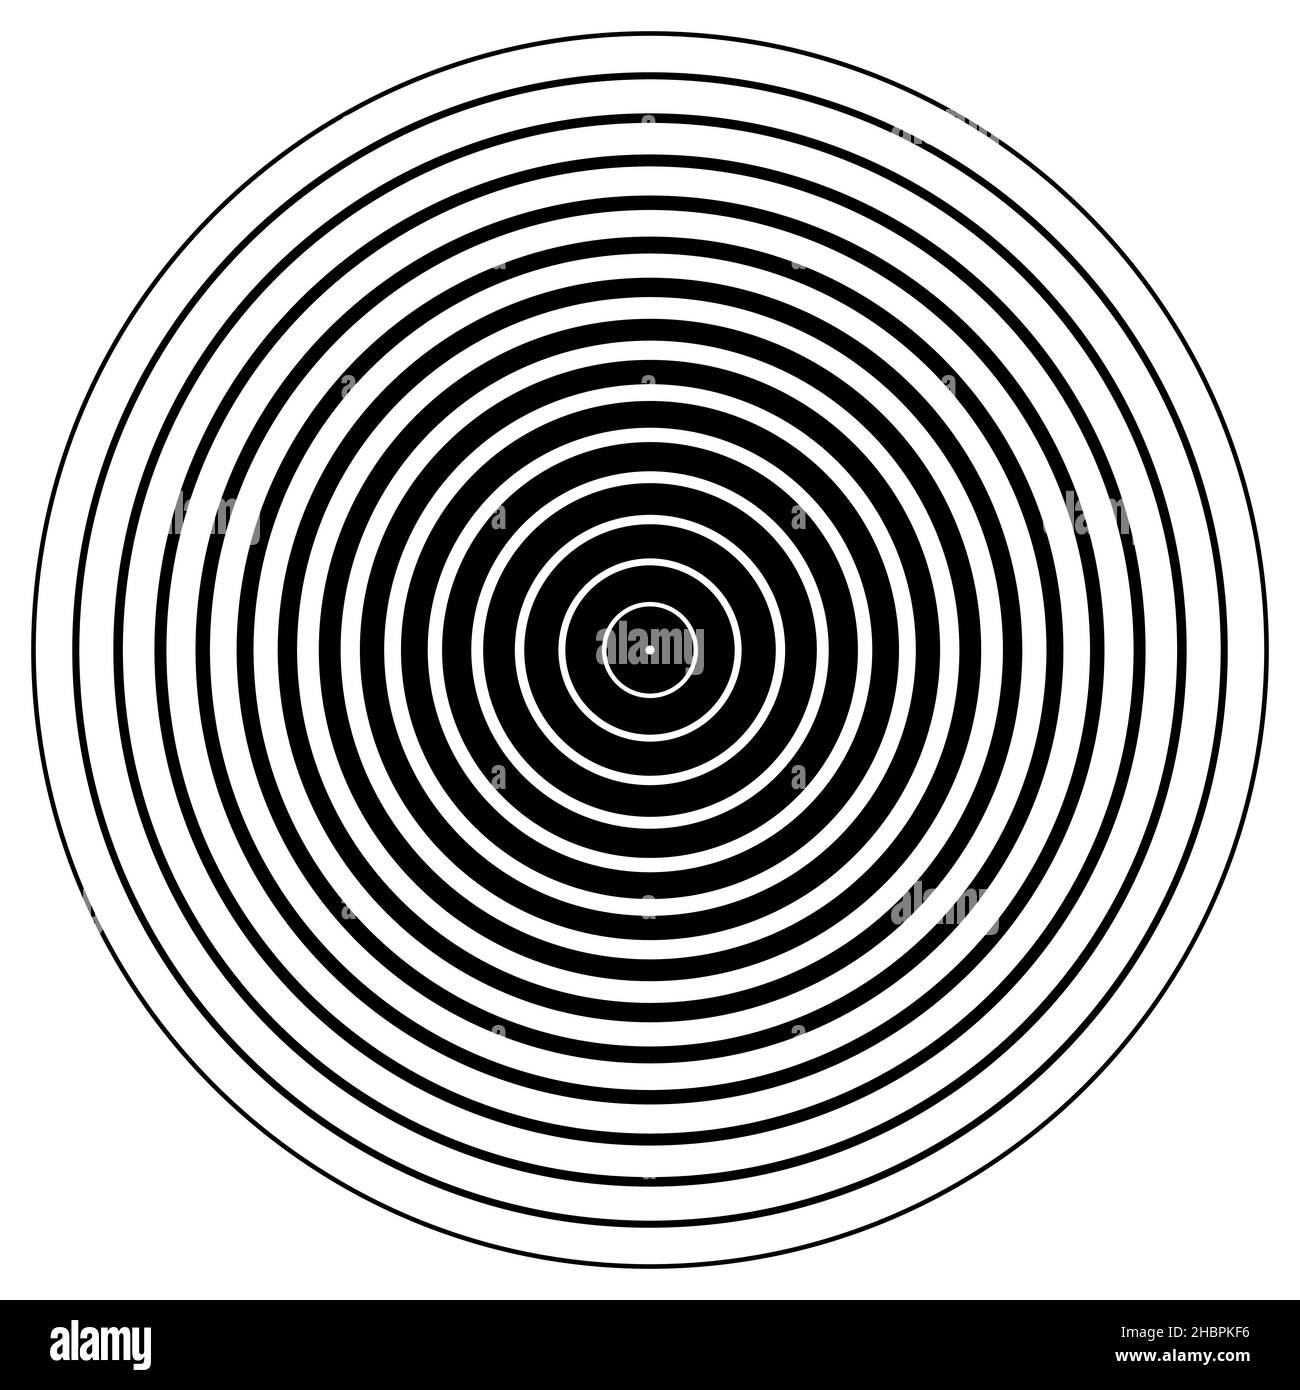 Élément de cercle concentrique.Bague noire et blanche.Illustration des ondes sonores abstraites Illustration de Vecteur